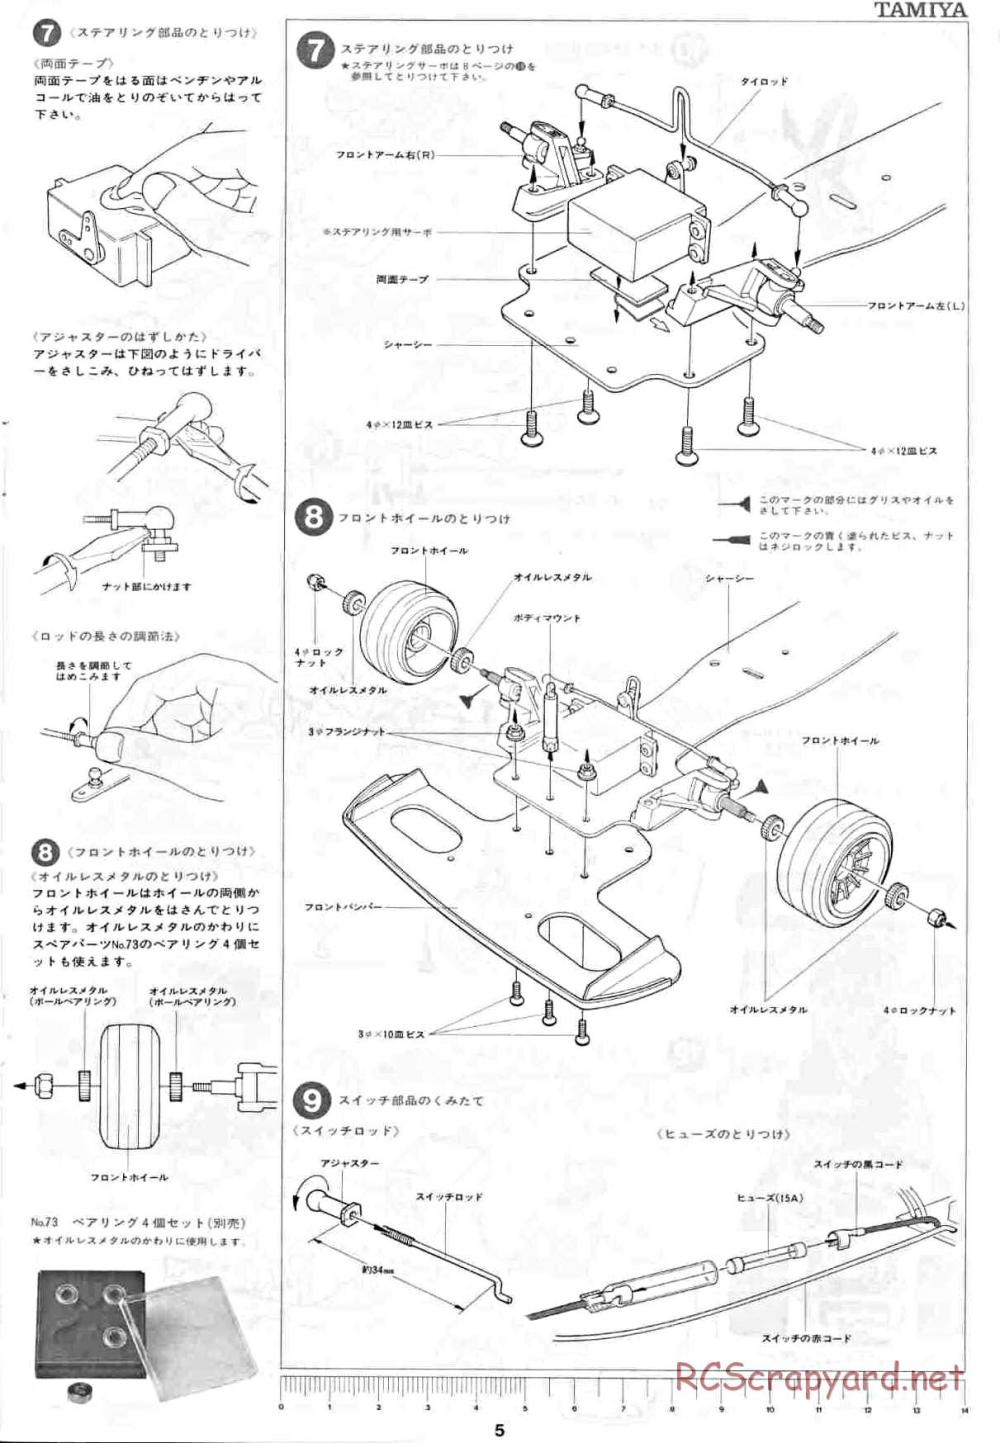 Tamiya - Honda F2 (CS) - 58030 - Manual - Page 5